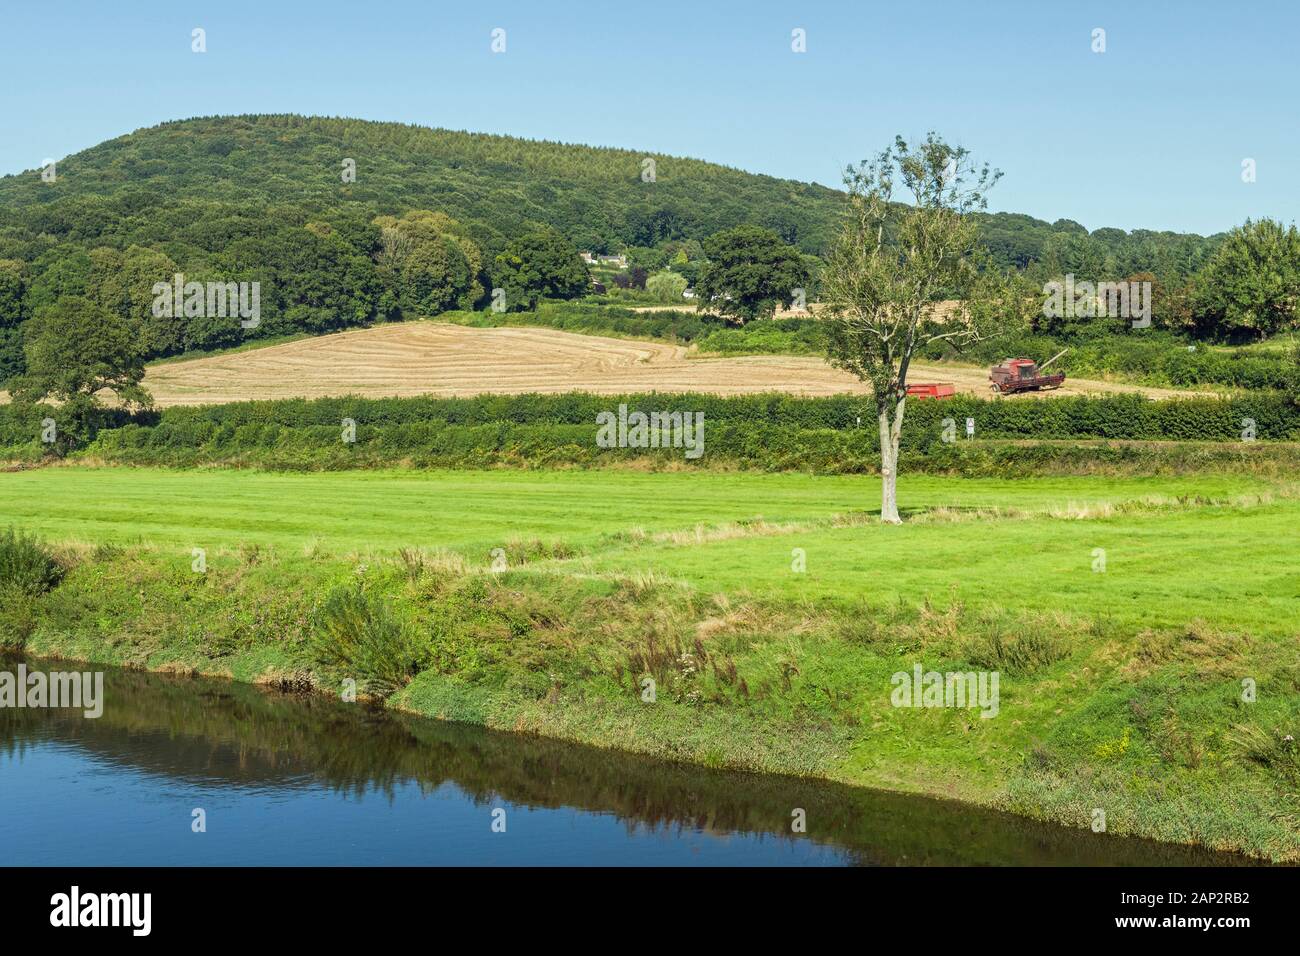 El paisaje tranquilo y rural del valle de Wye desde el puente Bigswoir, que separa Gales de Inglaterra. Foto de stock